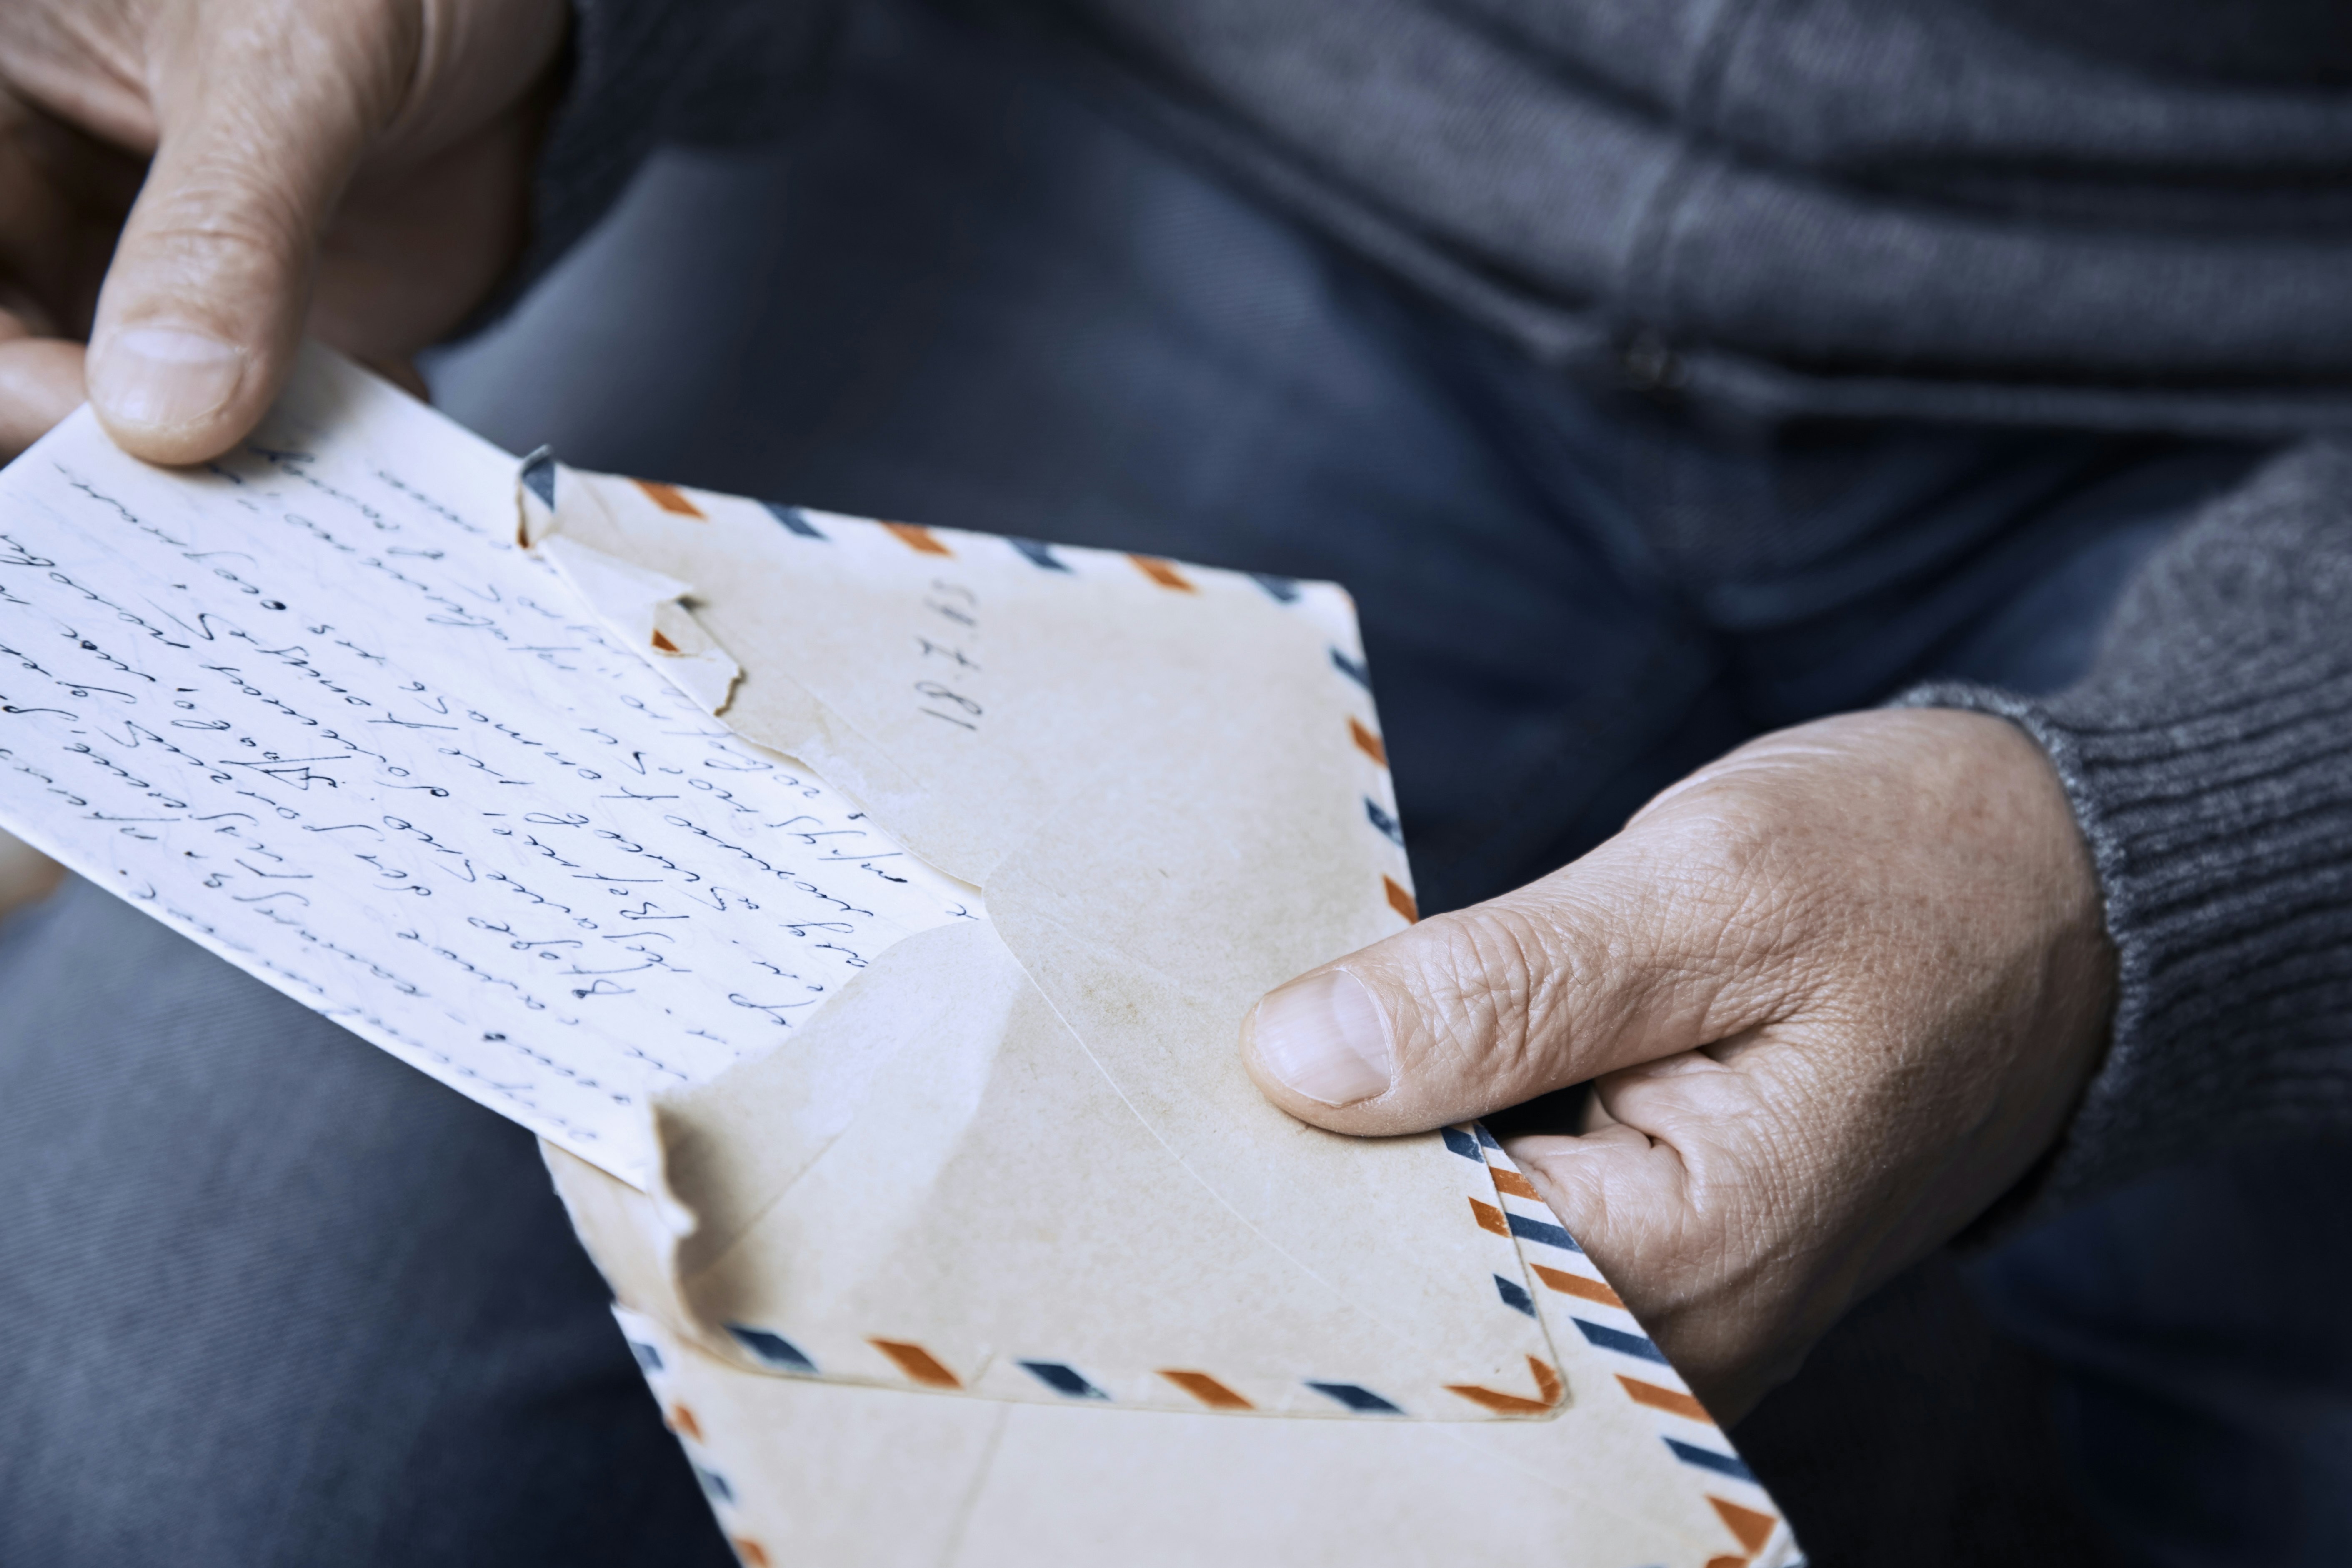 The hands of an elderly man open an envelope and handwritten letter